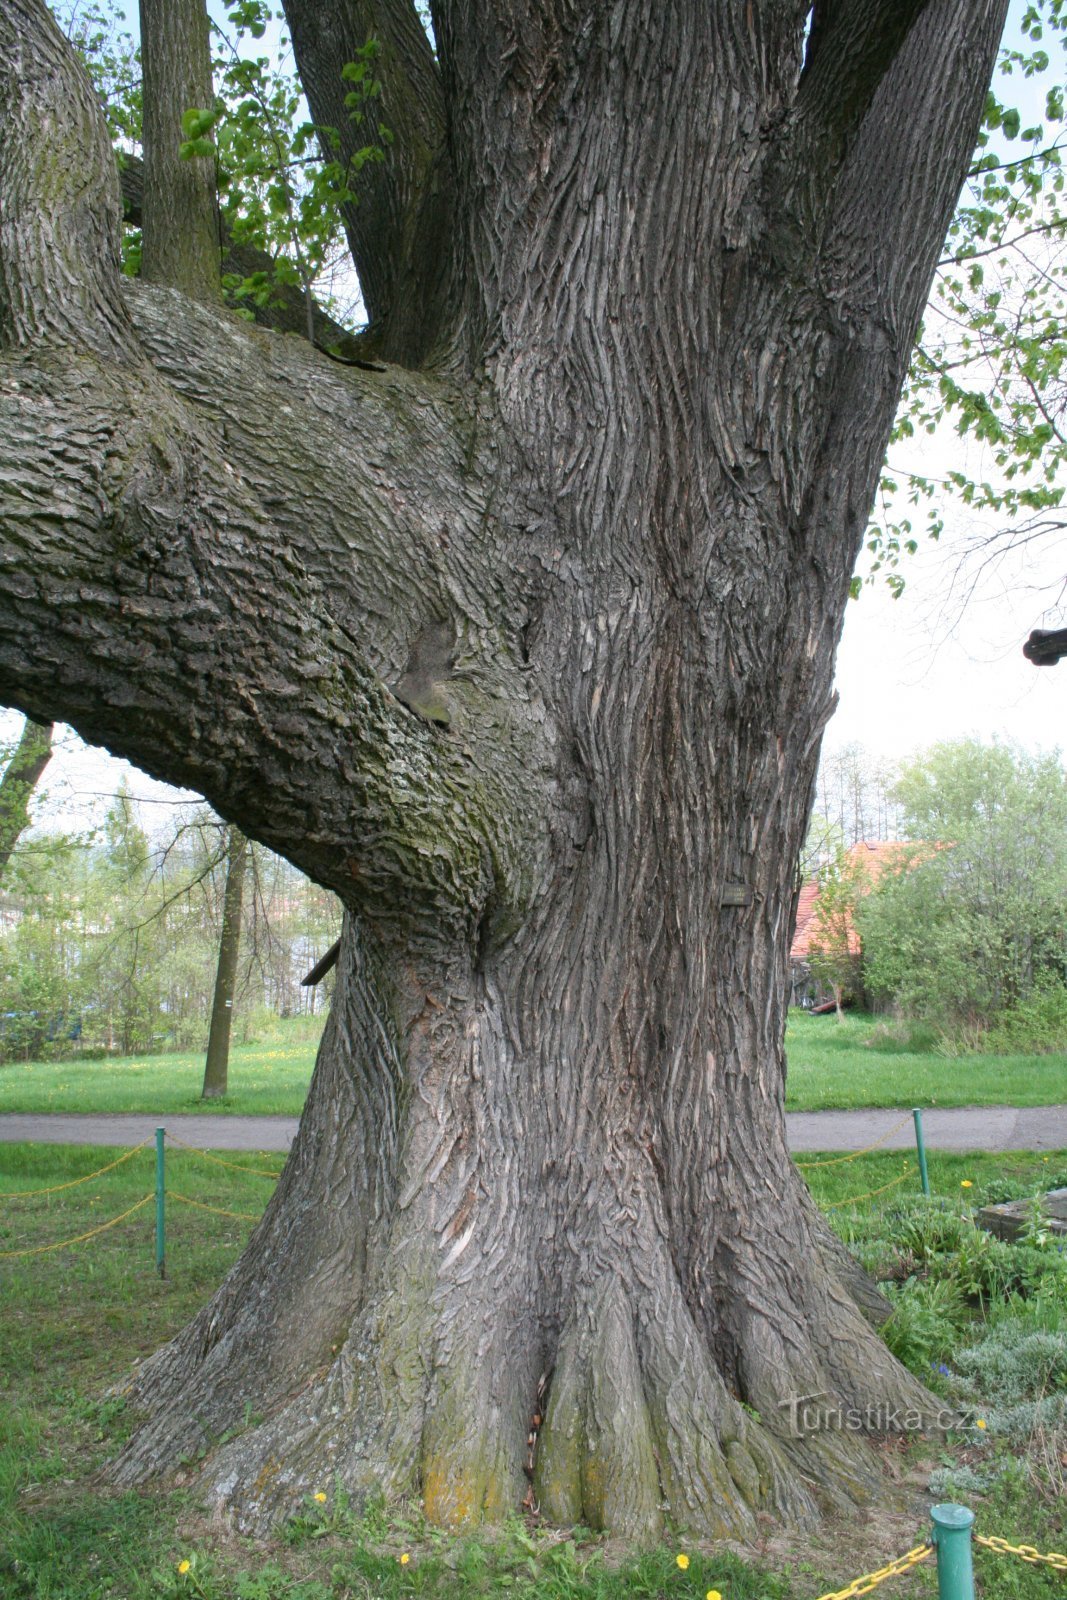 Le beau tronc de tilleul a des branches relativement basses par rapport au sol